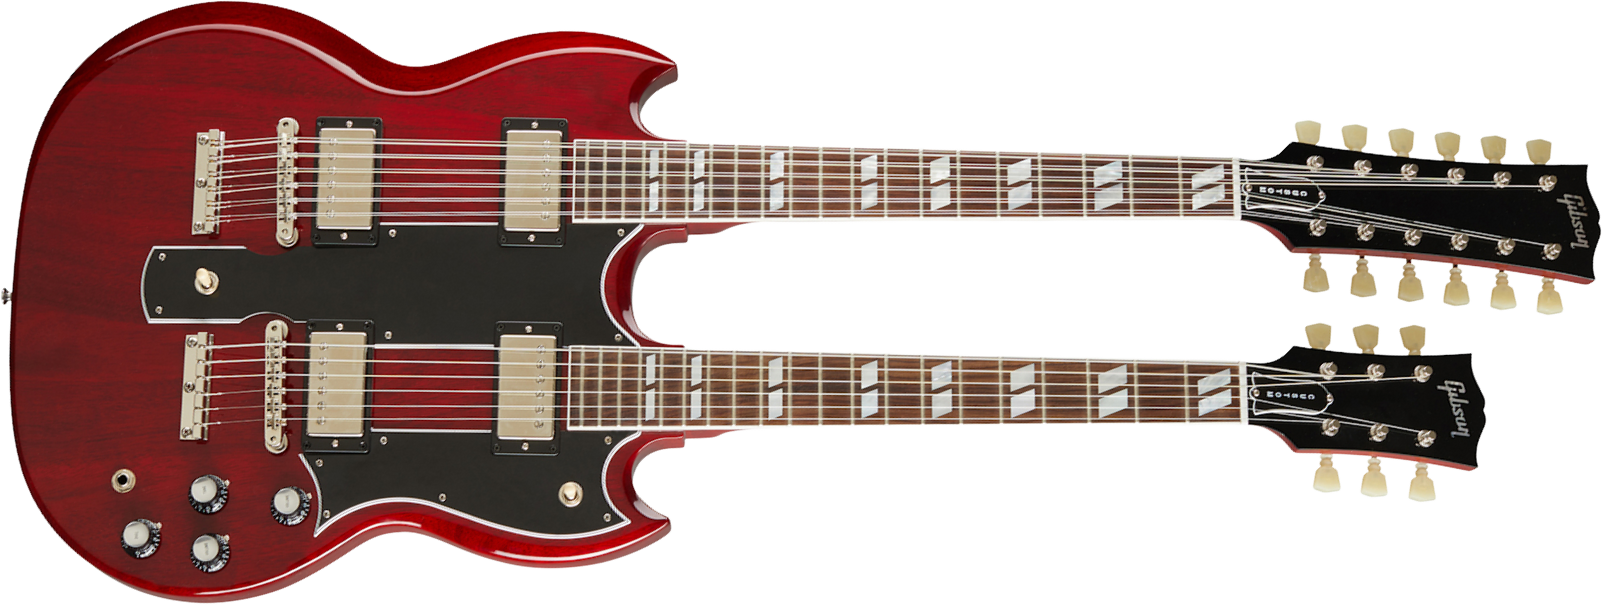 Gibson Custom Shop Eds-1275 Double Neck 2h Ht Rw - Cherry Red - Guitarra eléctrica de doble mástil - Main picture